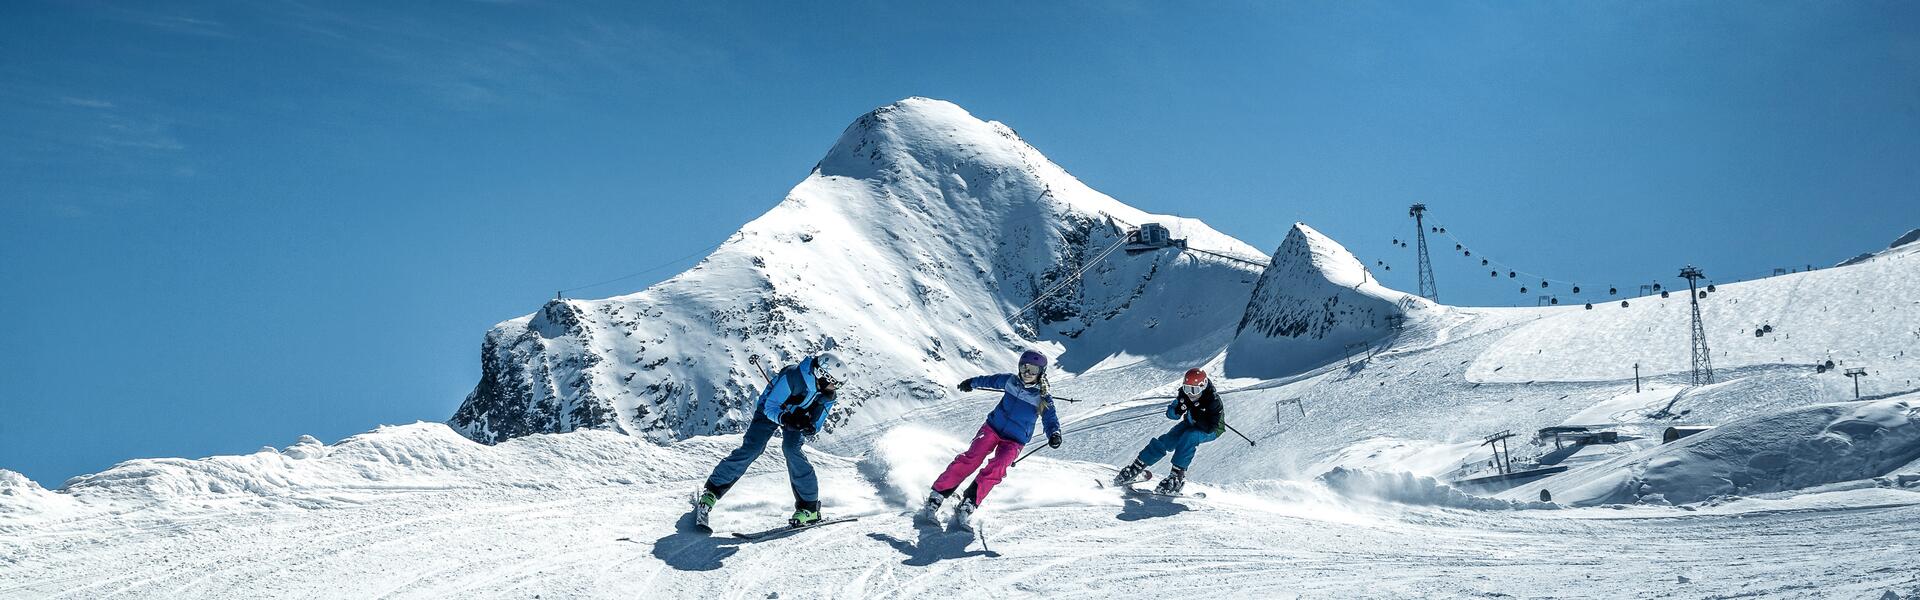 familie skiurlaub zell am see kaprun